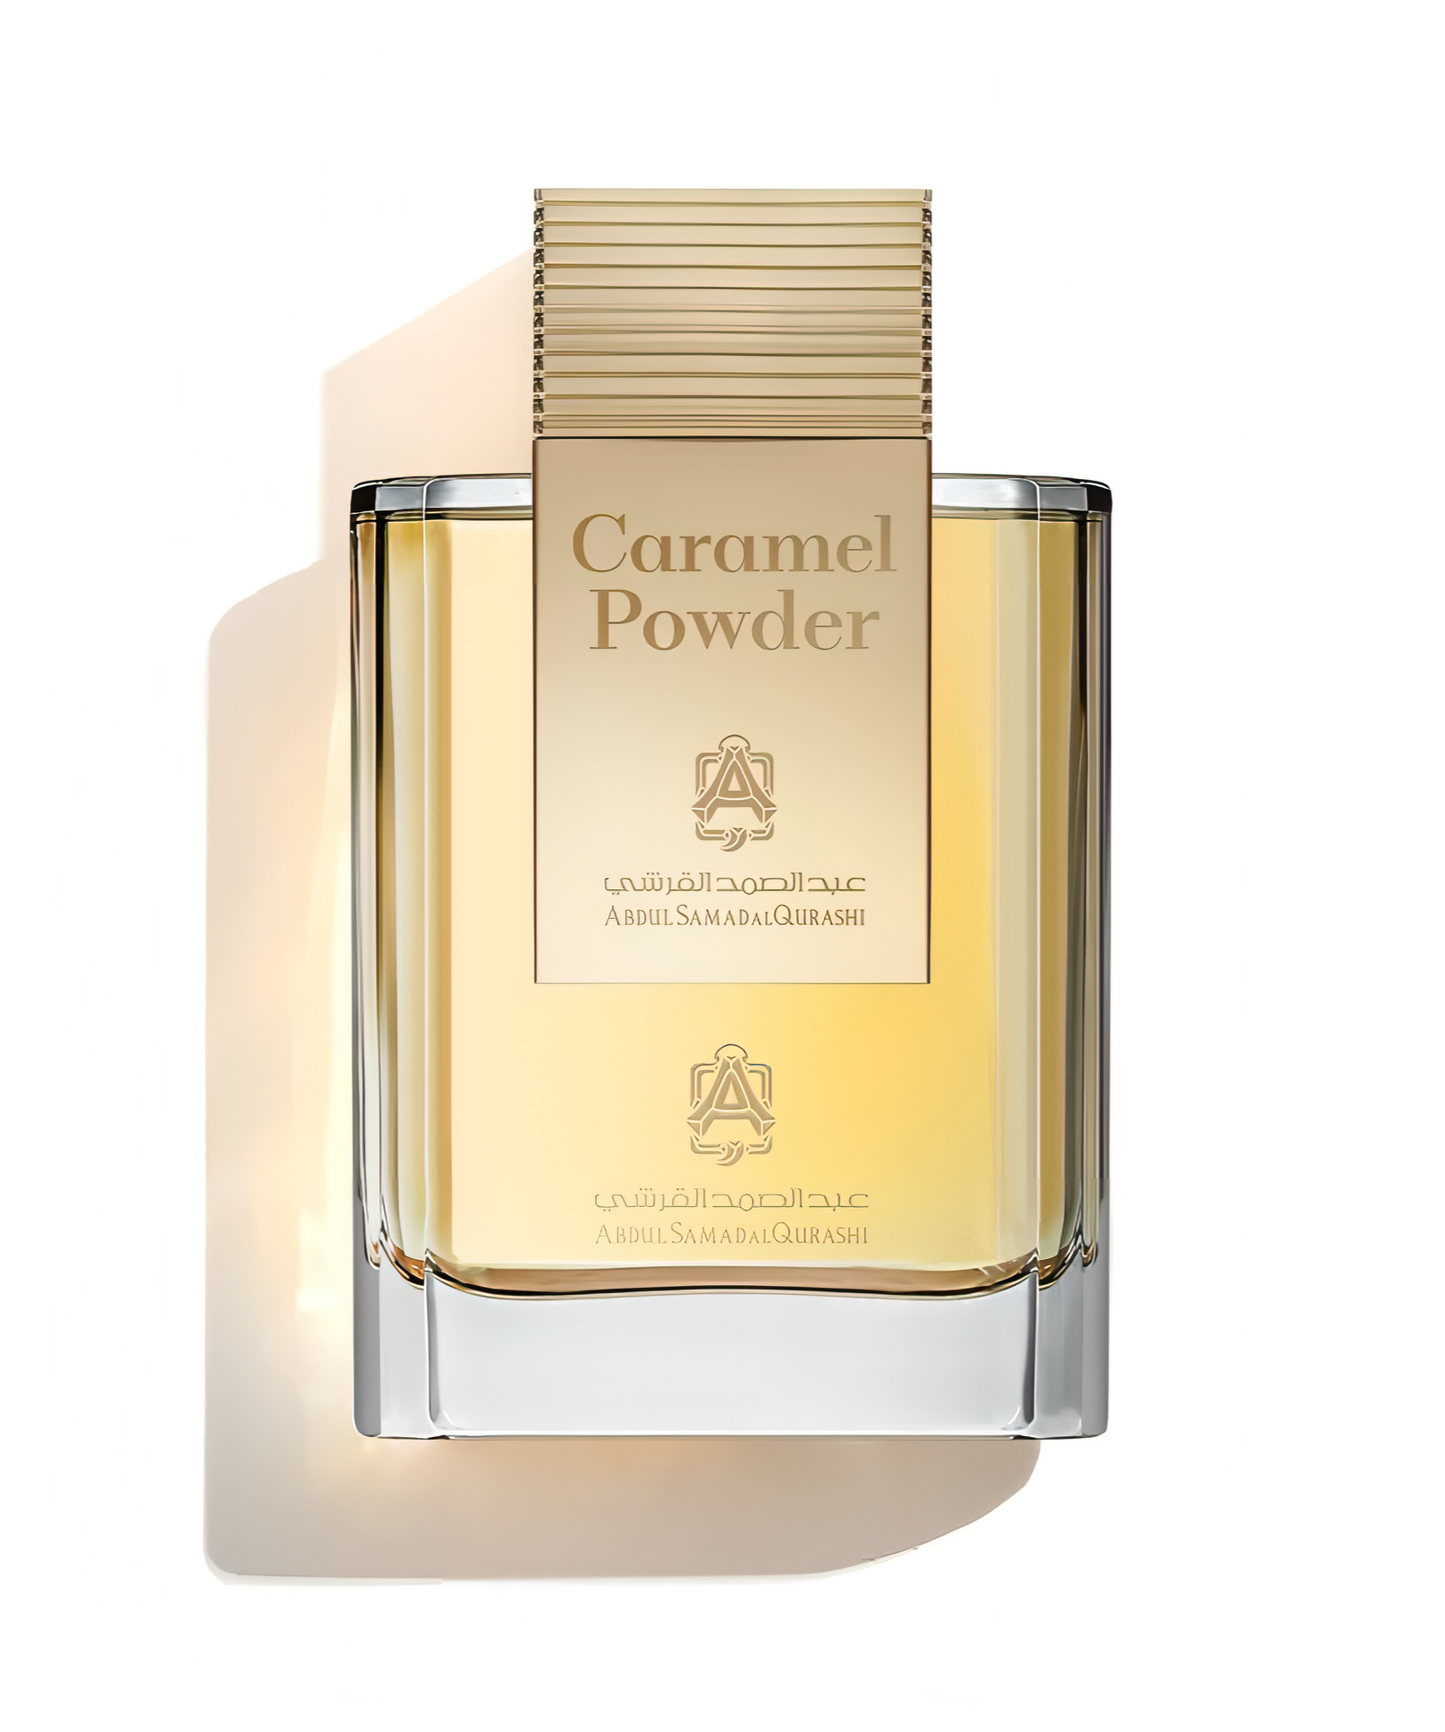 Caramel Powder Limited Edition Abdul Samad Al Qurashi Parfum